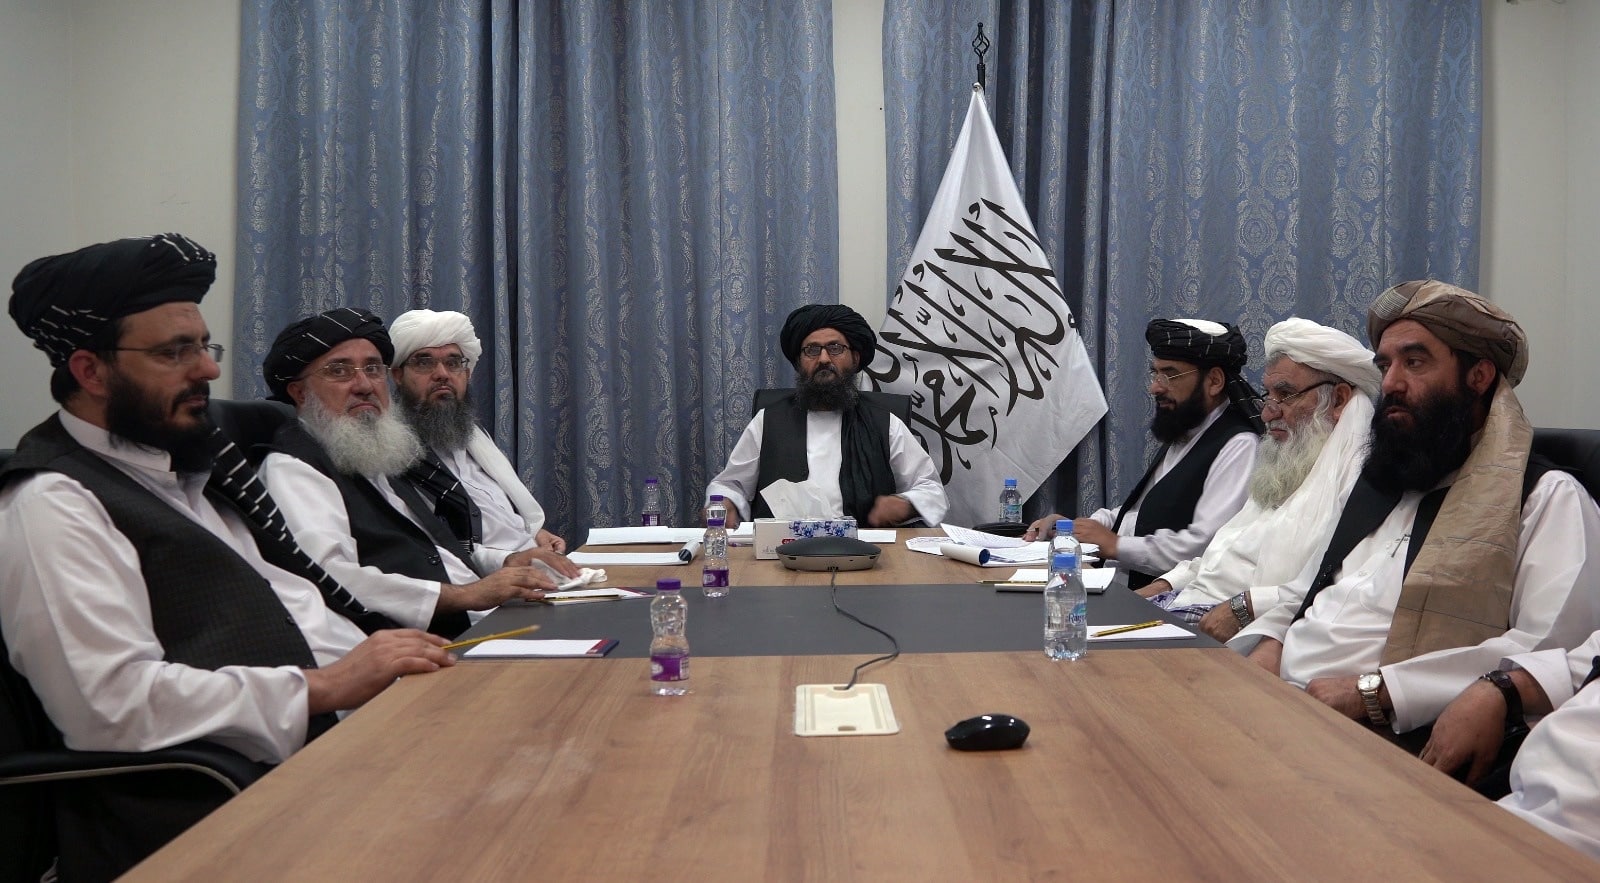 El mulá Abdul Ghani Baradar, junto a la bandera, talibán en una reunión